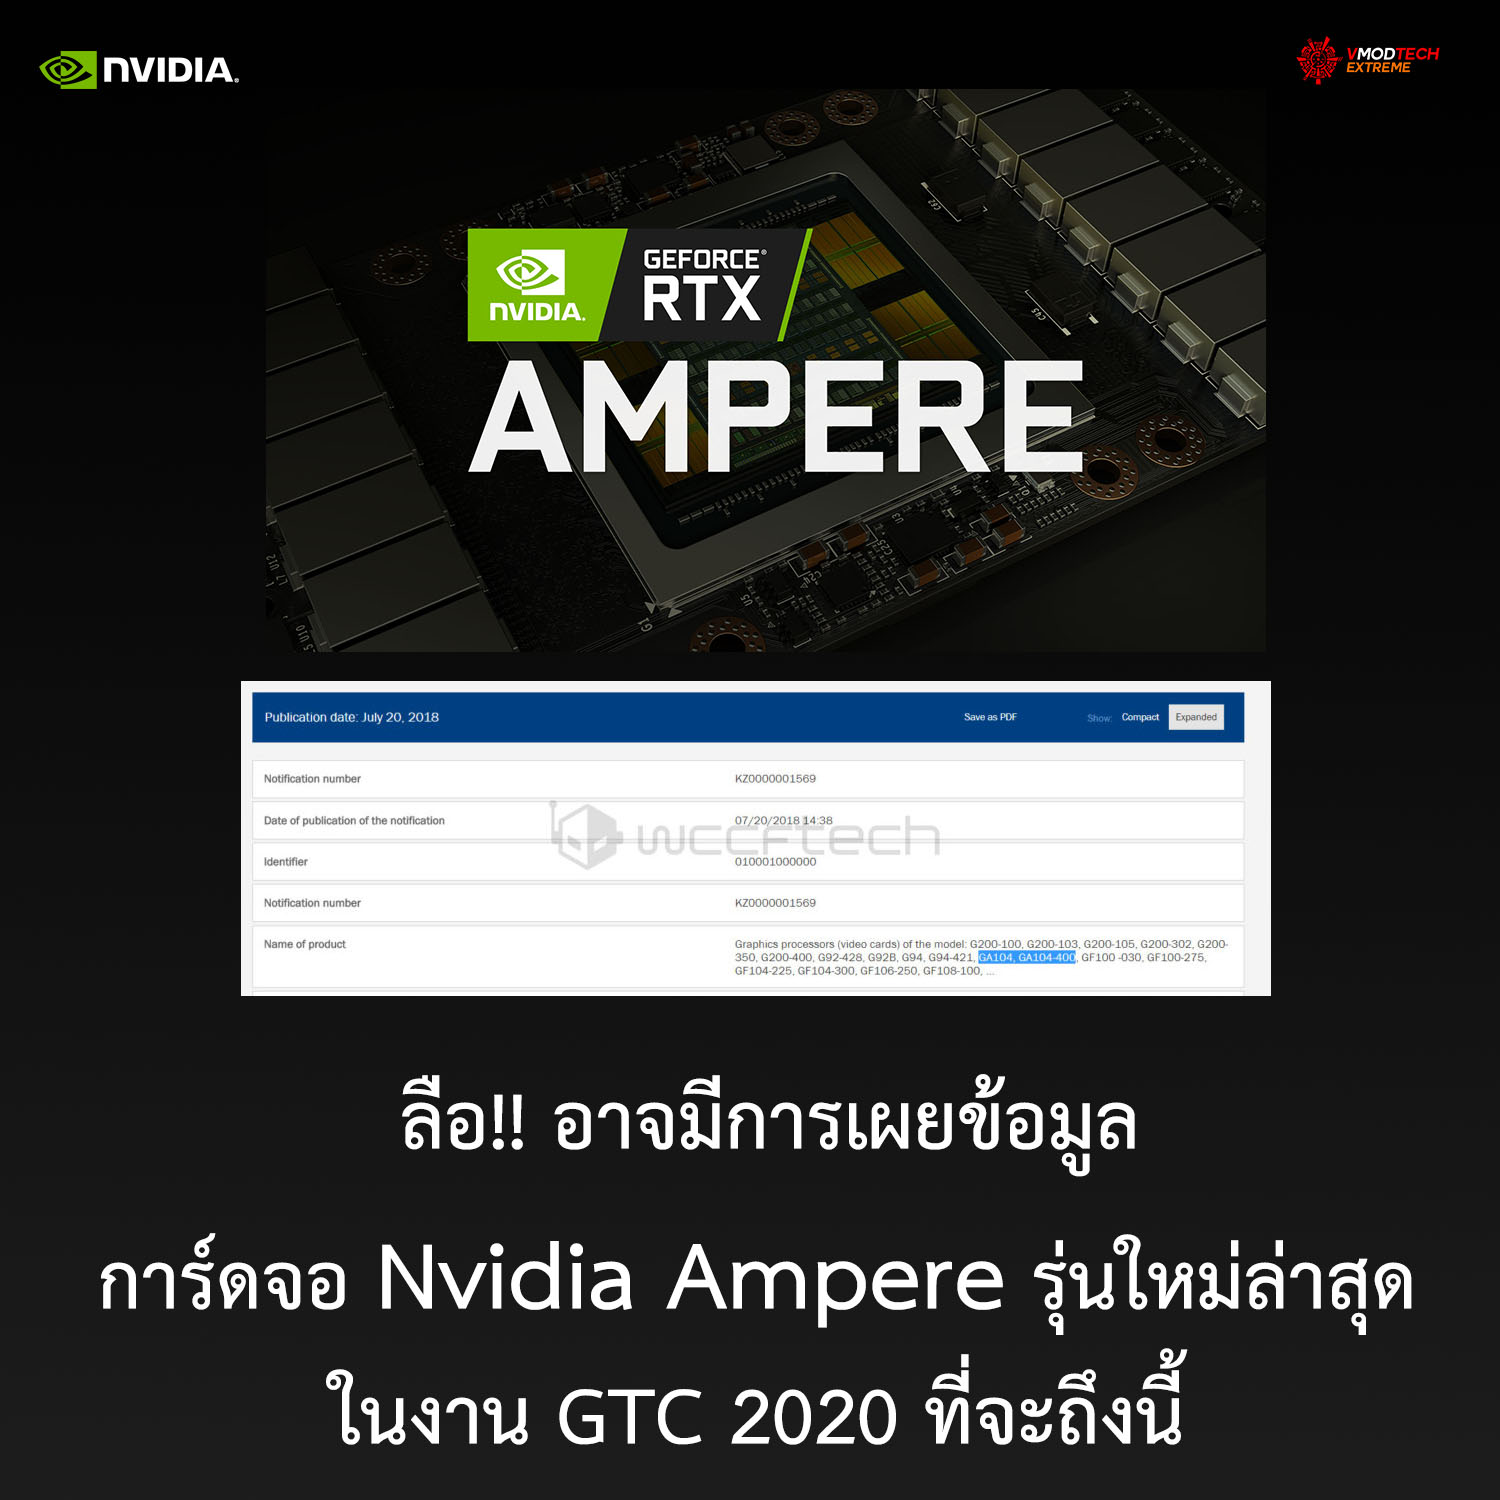 ลือ!! อาจมีการเผยข้อมูลการ์ดจอ Nvidia Ampere รุ่นใหม่ล่าสุดในงาน GTC 2020 ที่จะถึงนี้